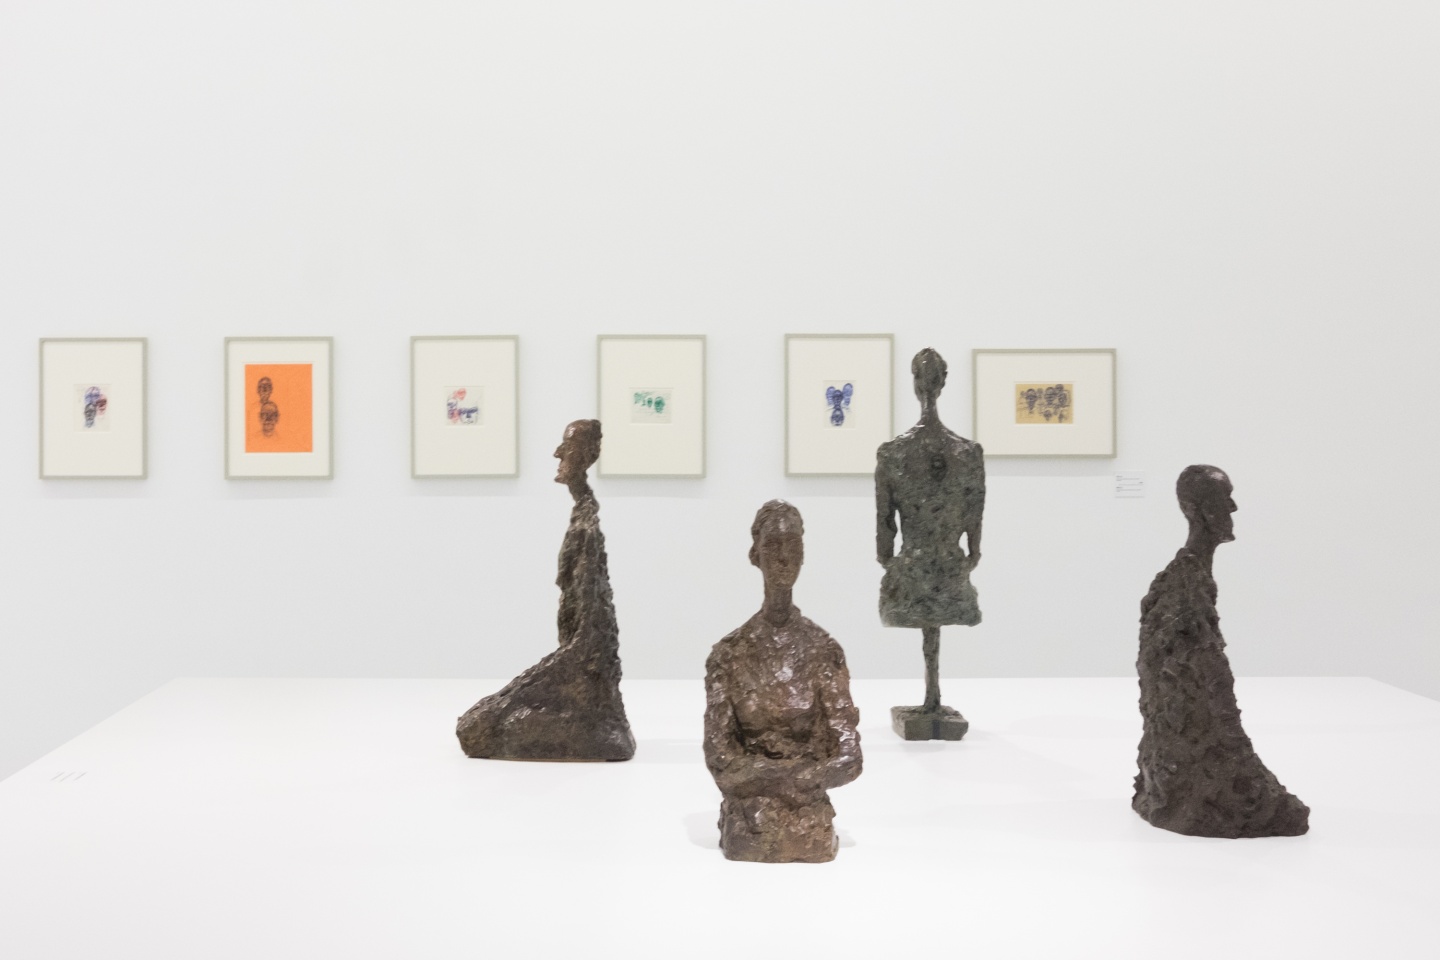 Fondation Giacometti - Alberto Giacometti Retrospective